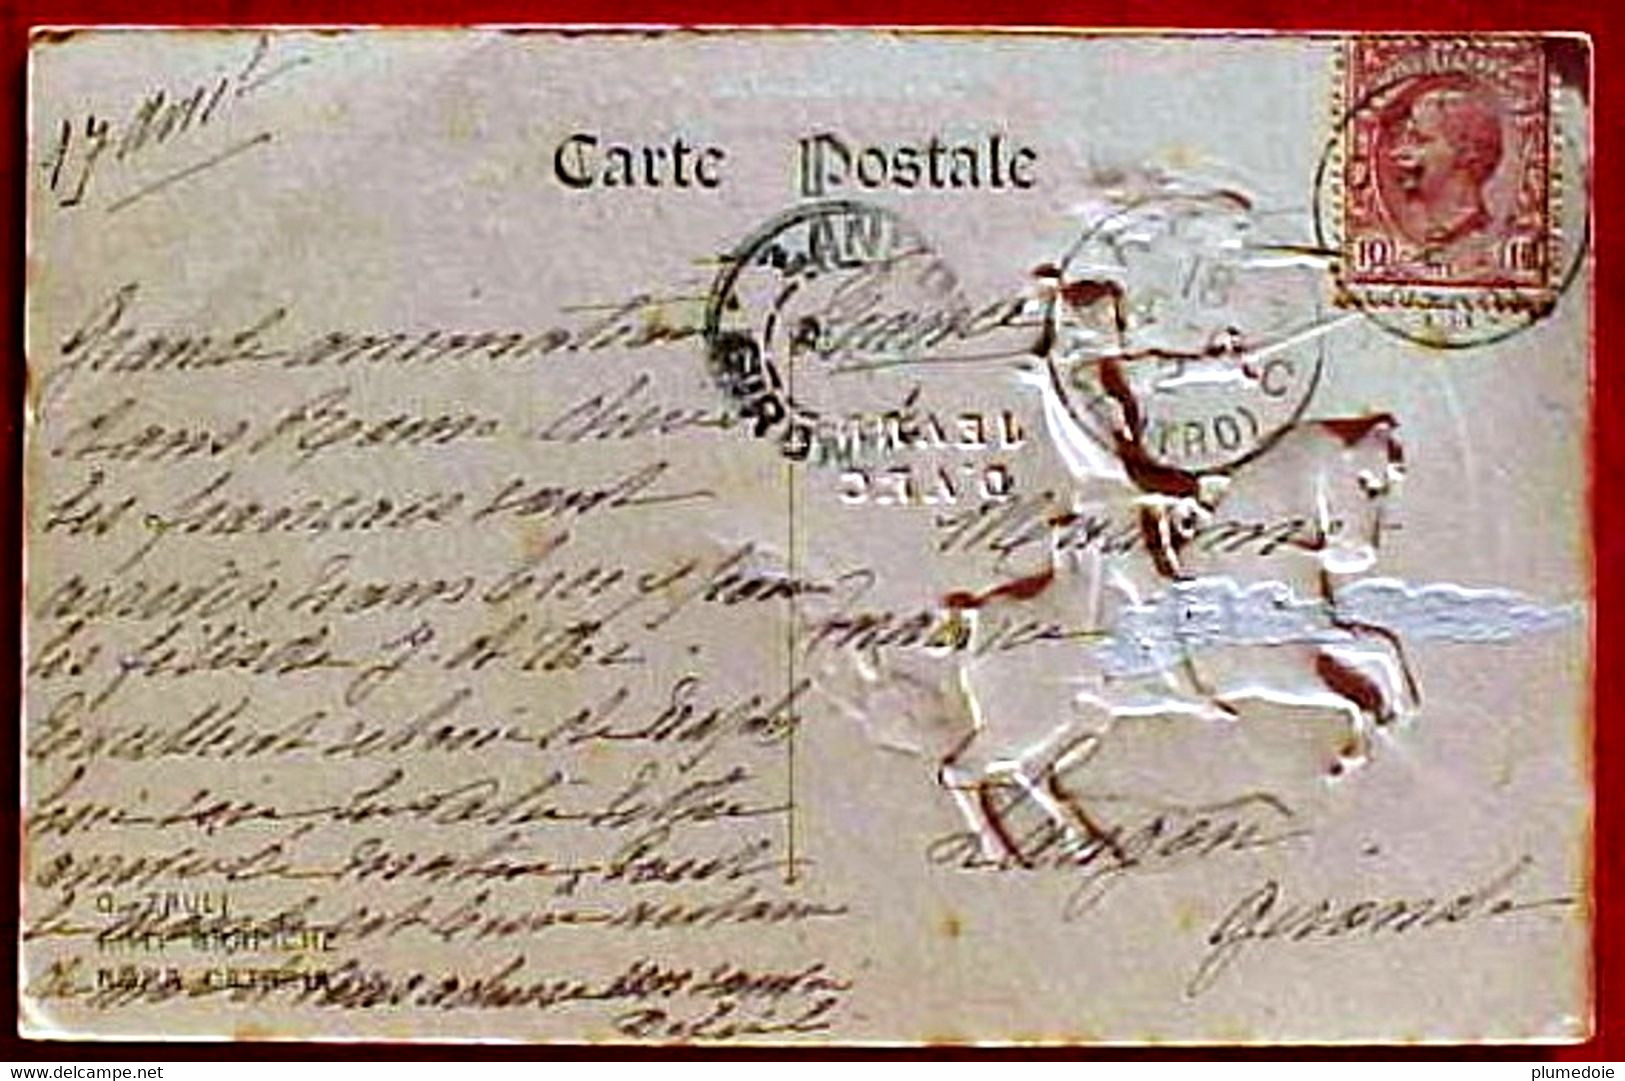 Rare Cpa Gaufrée SOUVENIR BEATIFICATION JEANNE D ARC 18 AVRIL 1909 En Médaillon Doré .  EDIT. G.ZAULI - Santi